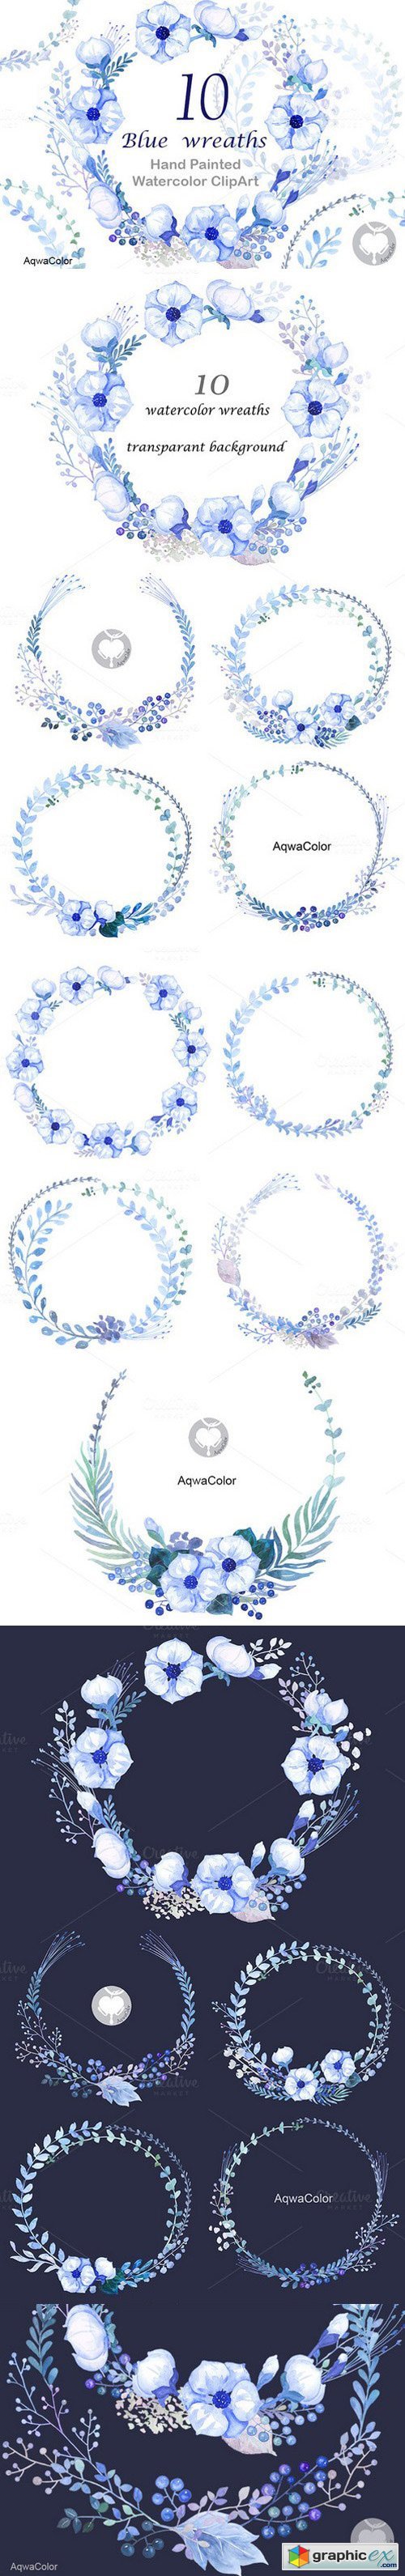 Watercolour clipart Blue Wreaths